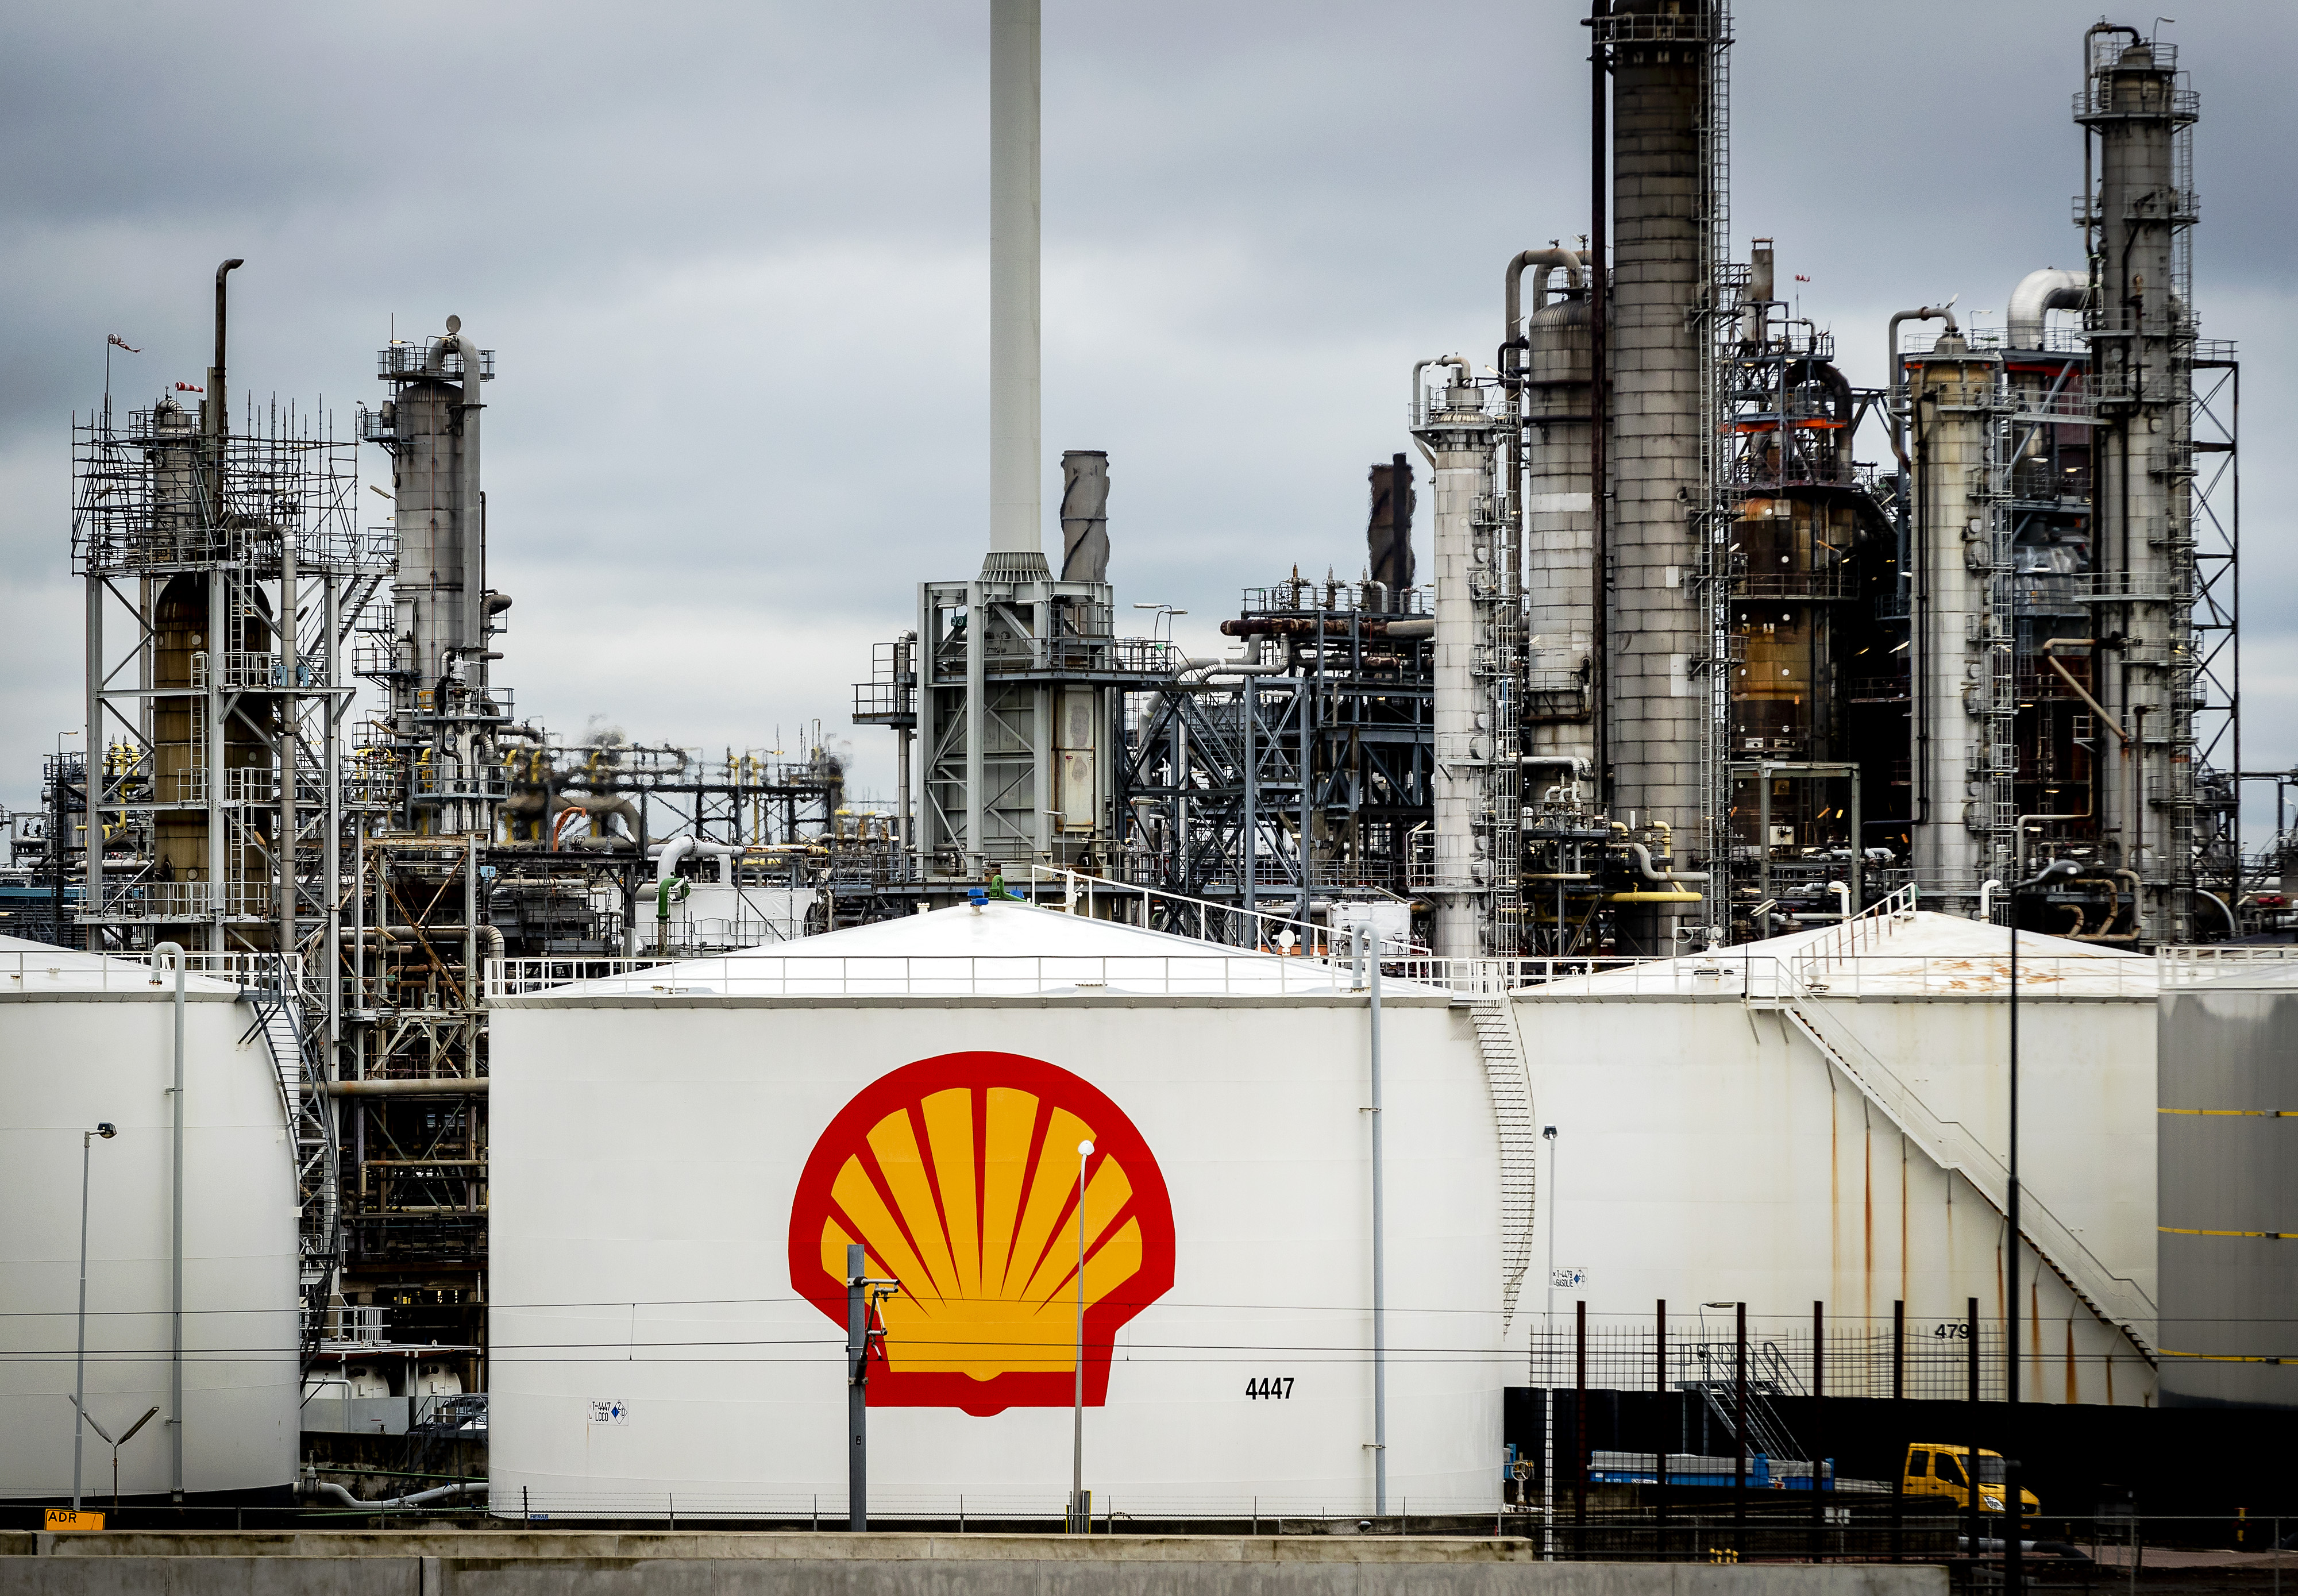 2017-02-28 11:45:32 ROTTERDAM - De raffinaderij van Shell in Pernis. De oliemaatschappij waarschuwde in een documentaire uit 1991 voor klimaatveranderingen. ANP REMKO DE WAAL